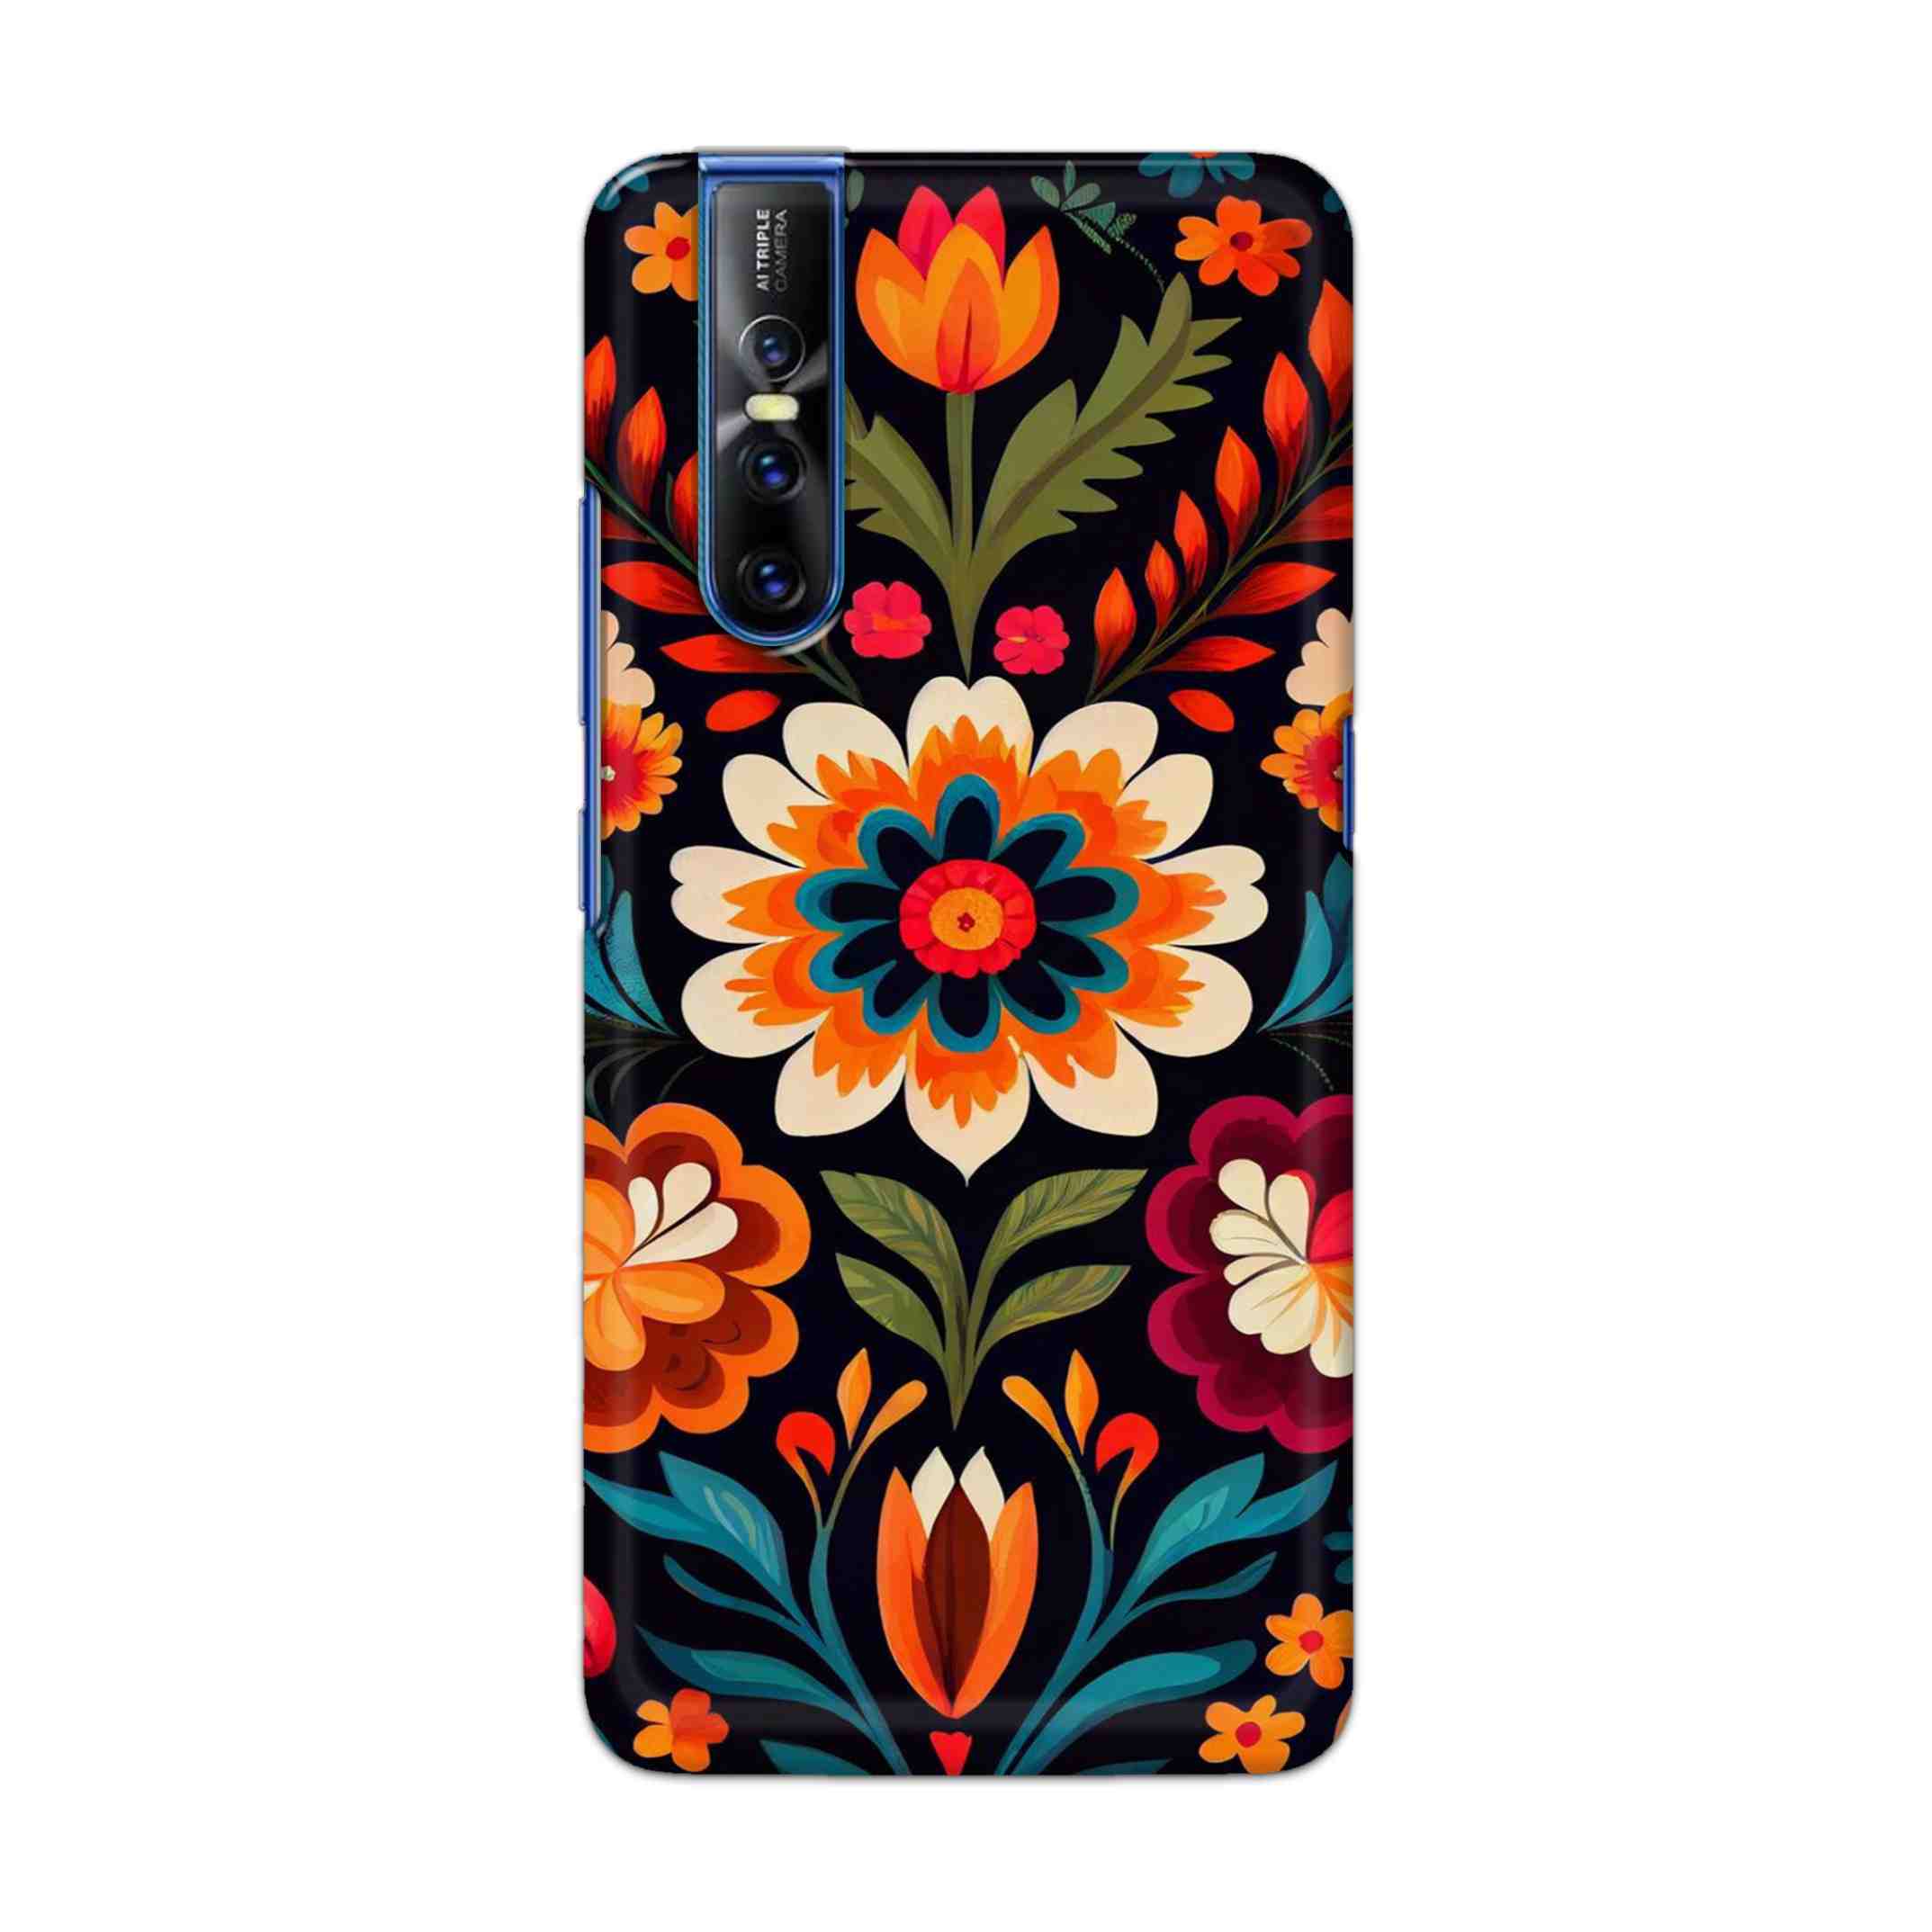 Buy Flower Hard Back Mobile Phone Case Cover For Vivo V15 Pro Online